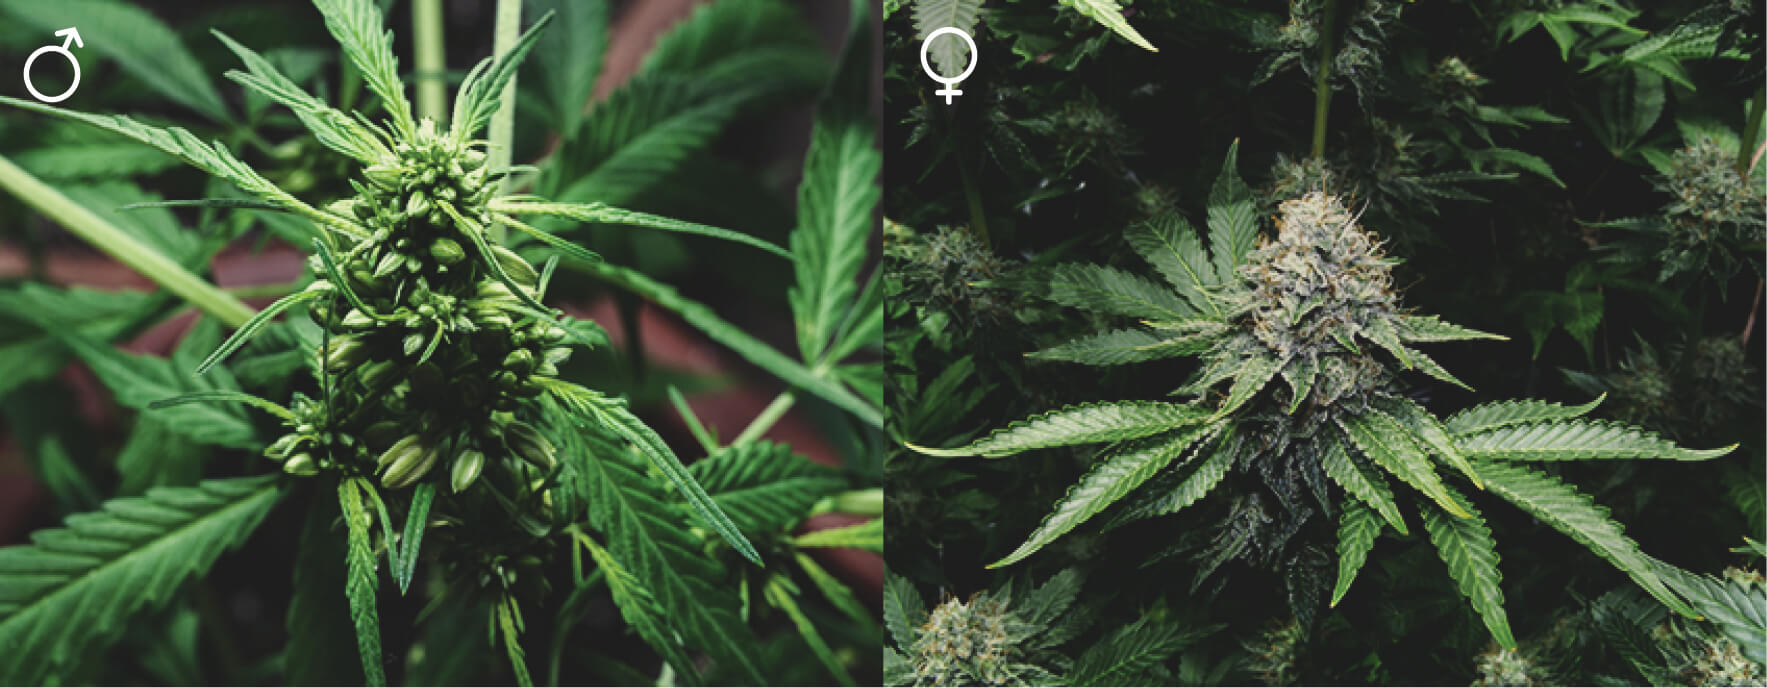 Totes les plantes de marihuana són iguals?